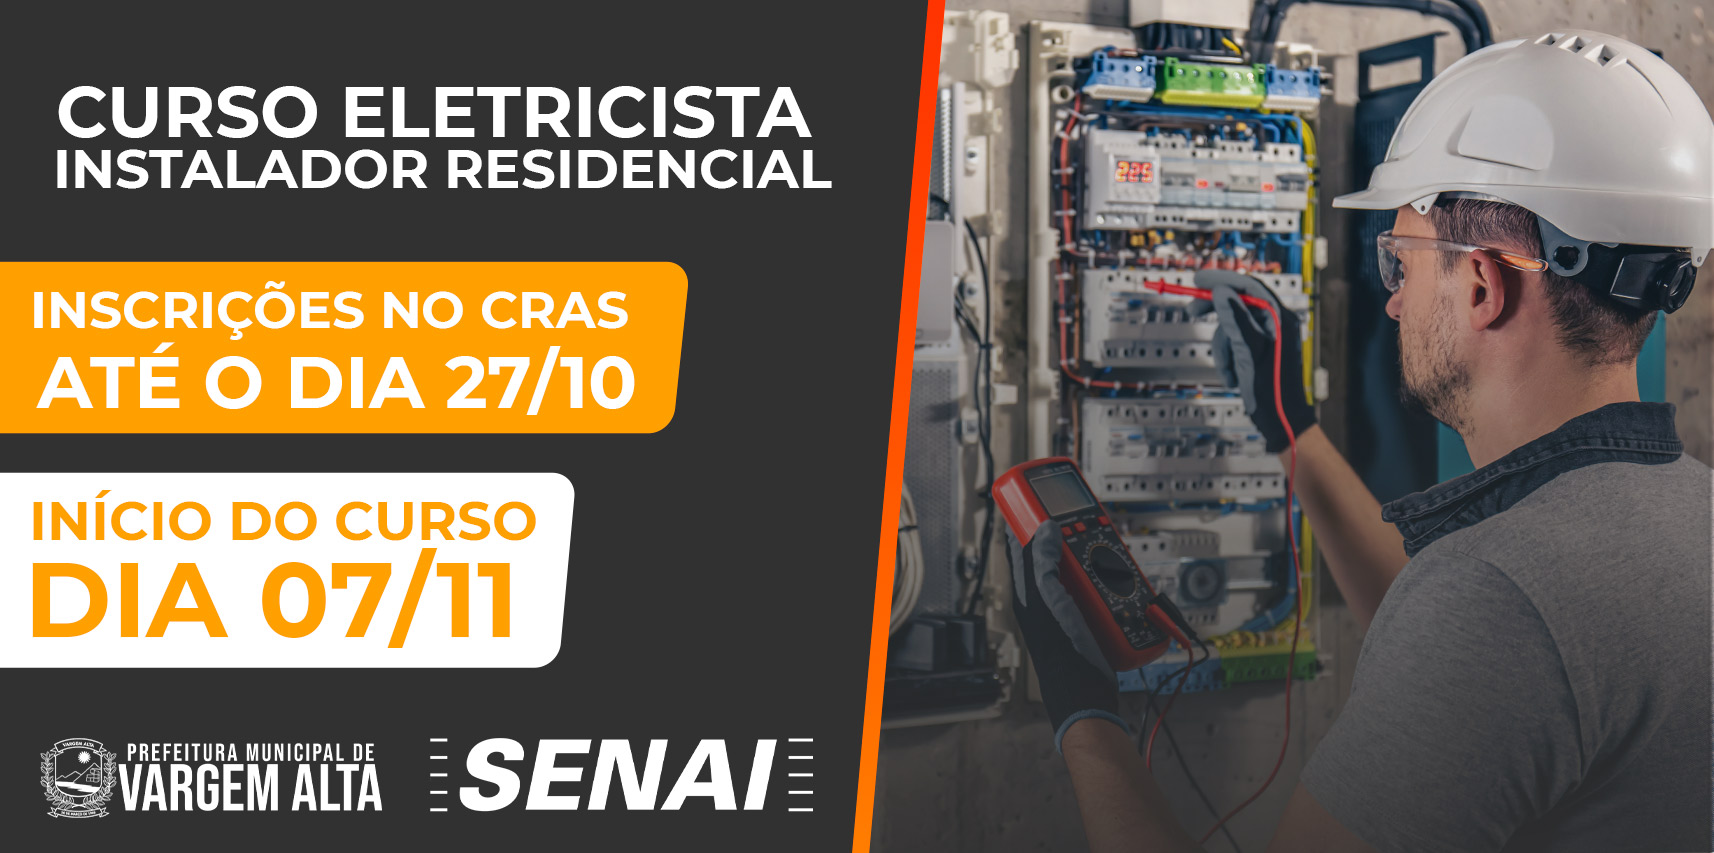 Prefeitura de Vargem Alta e SENAI oferecem curso gratuito de Eletricista Instalador Residencial